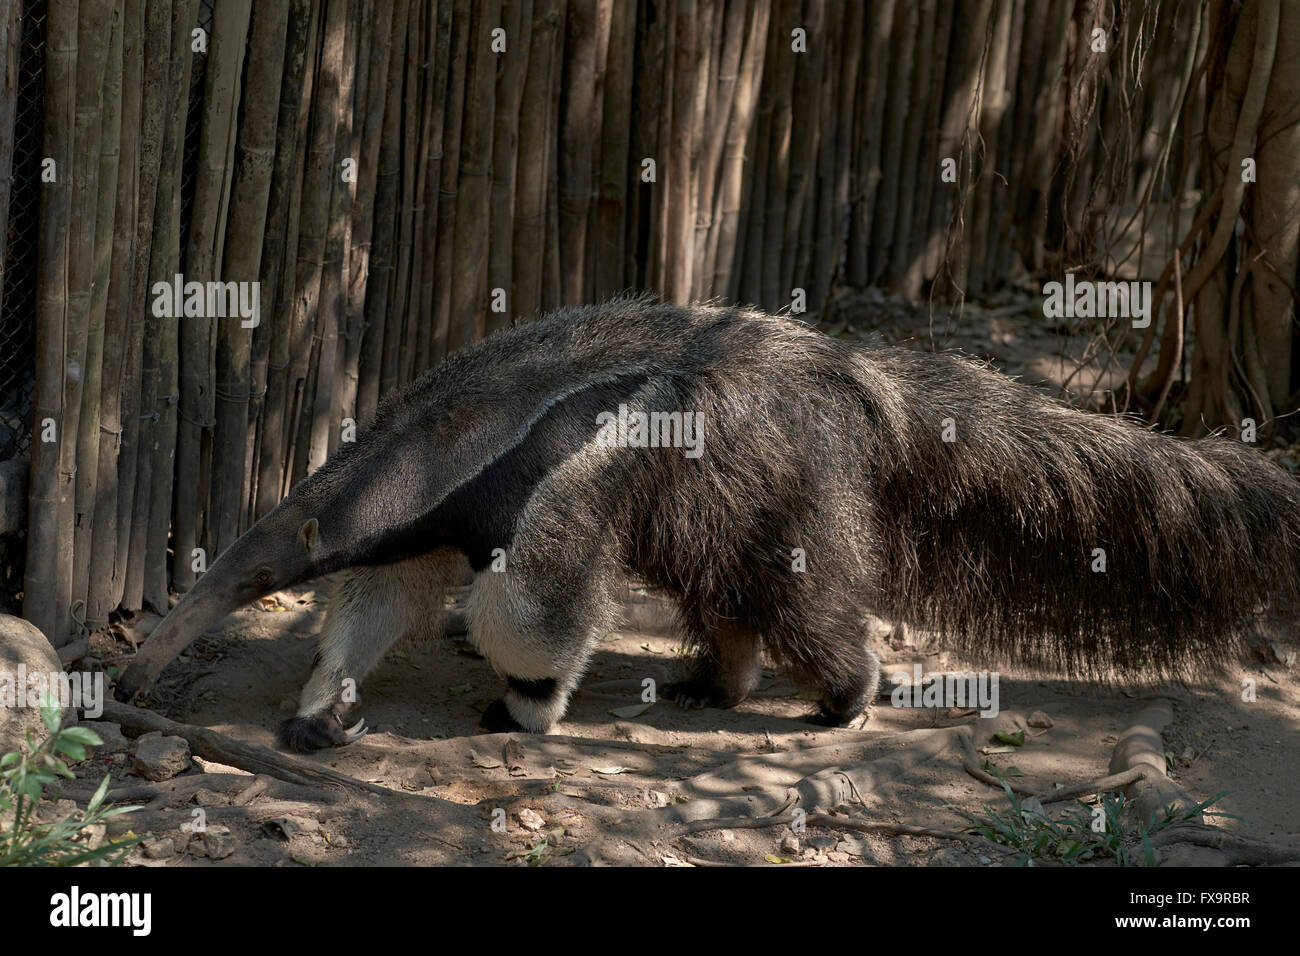 Giant Anteater (aka Ant Bear) myrmecophaga tridactyla Stock Photo